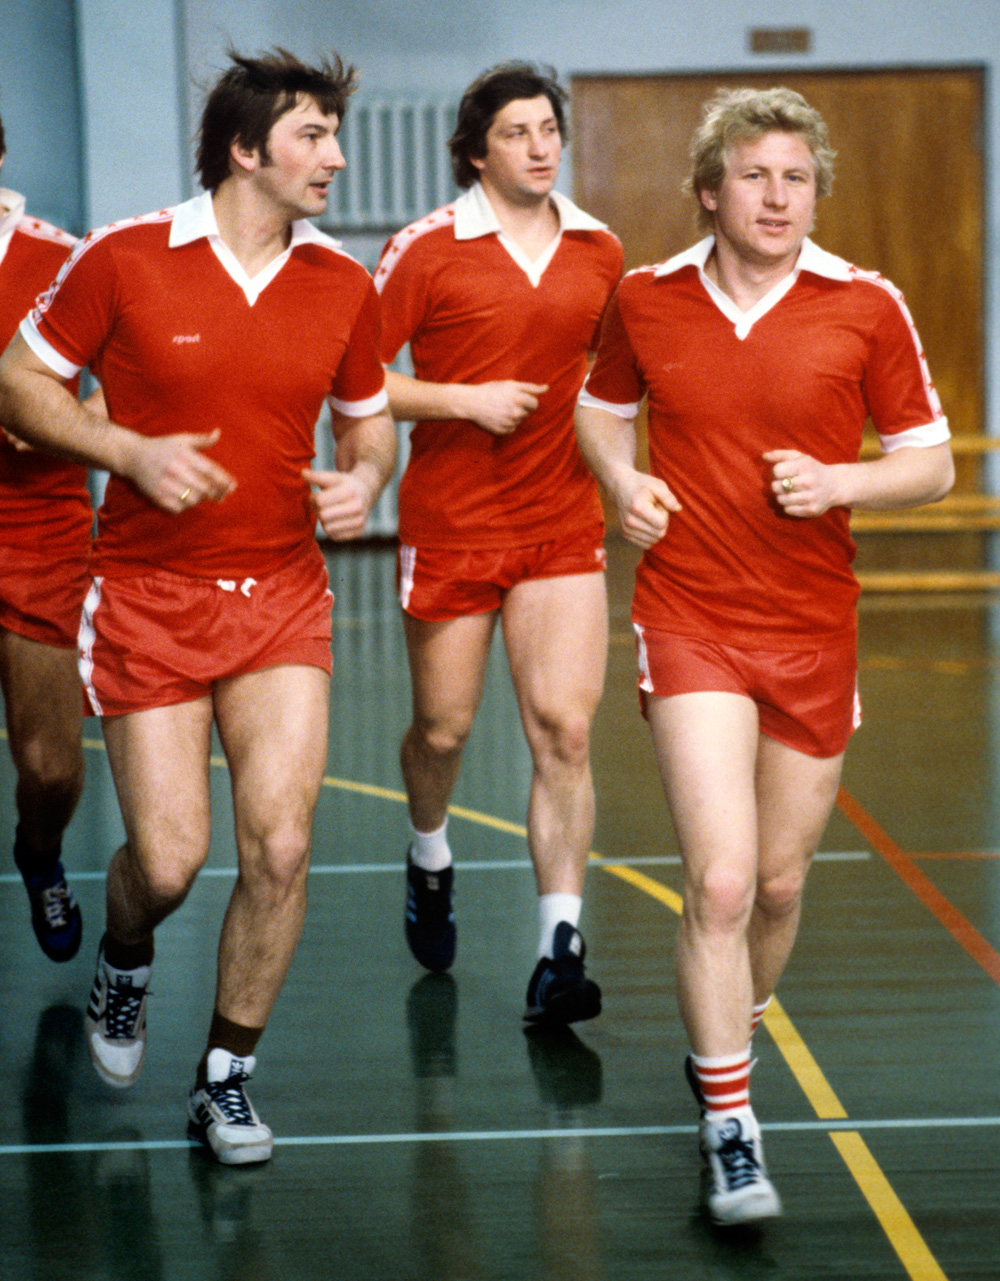 Члены сборной команды СССР по хоккею с шайбой, чемпионы XIV зимних Олимпийских игр в Сараево 1984 года Владислав Третьяк, Сергей Капустин и Владимир Мышкин (слева направо) на тренировке.